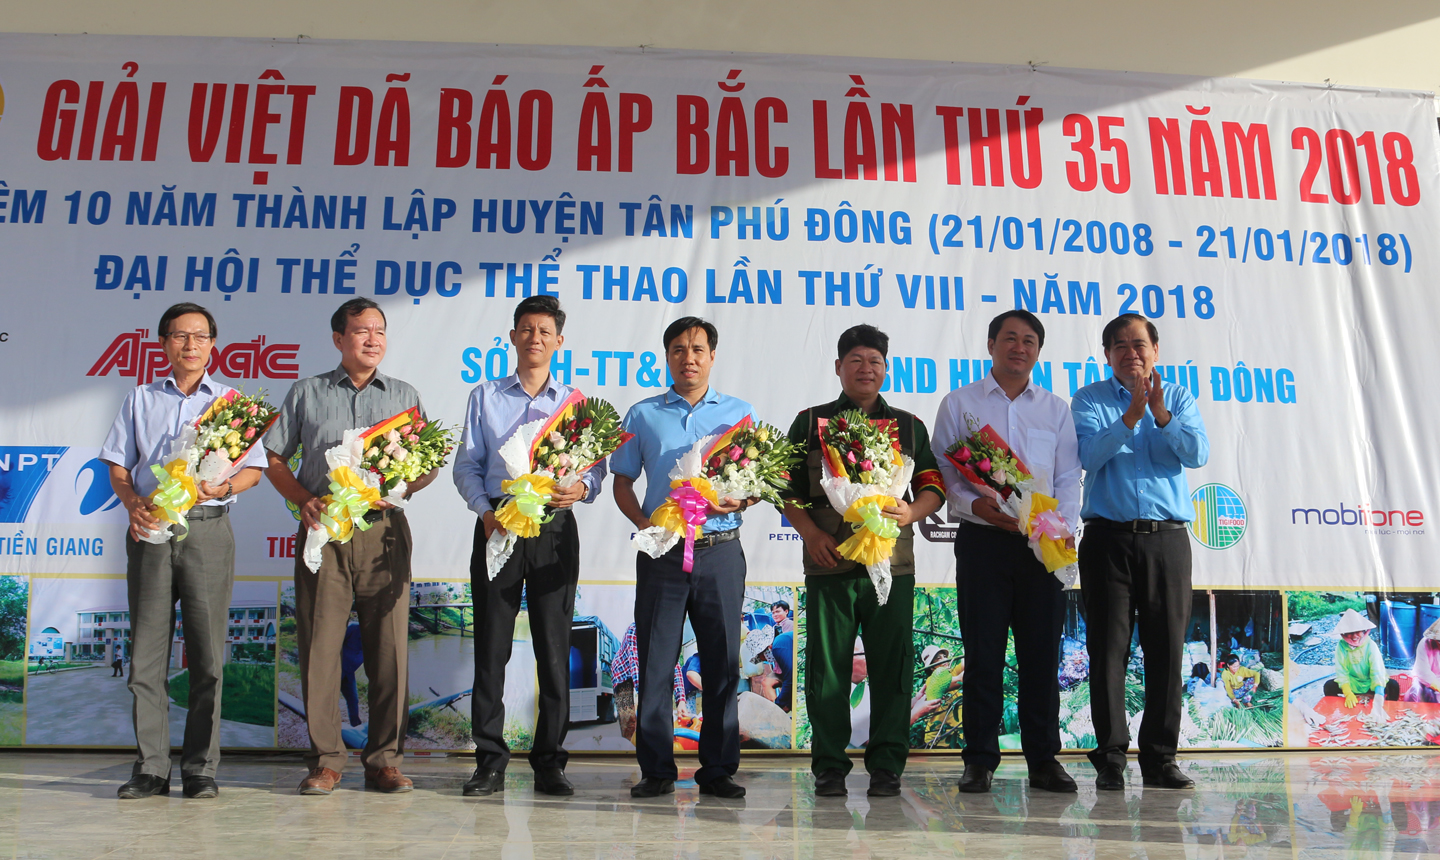 Giám đốc VNPT Tiền Giang Nguyễn Văn Thái, (người đứng thứ 2 từ trái sang), đơn vị tài trợ, nhận hoa từ Ban Tổ chức Giải Việt dã Báo Ấp Bắc lần thứ 35 - năm 2018. 